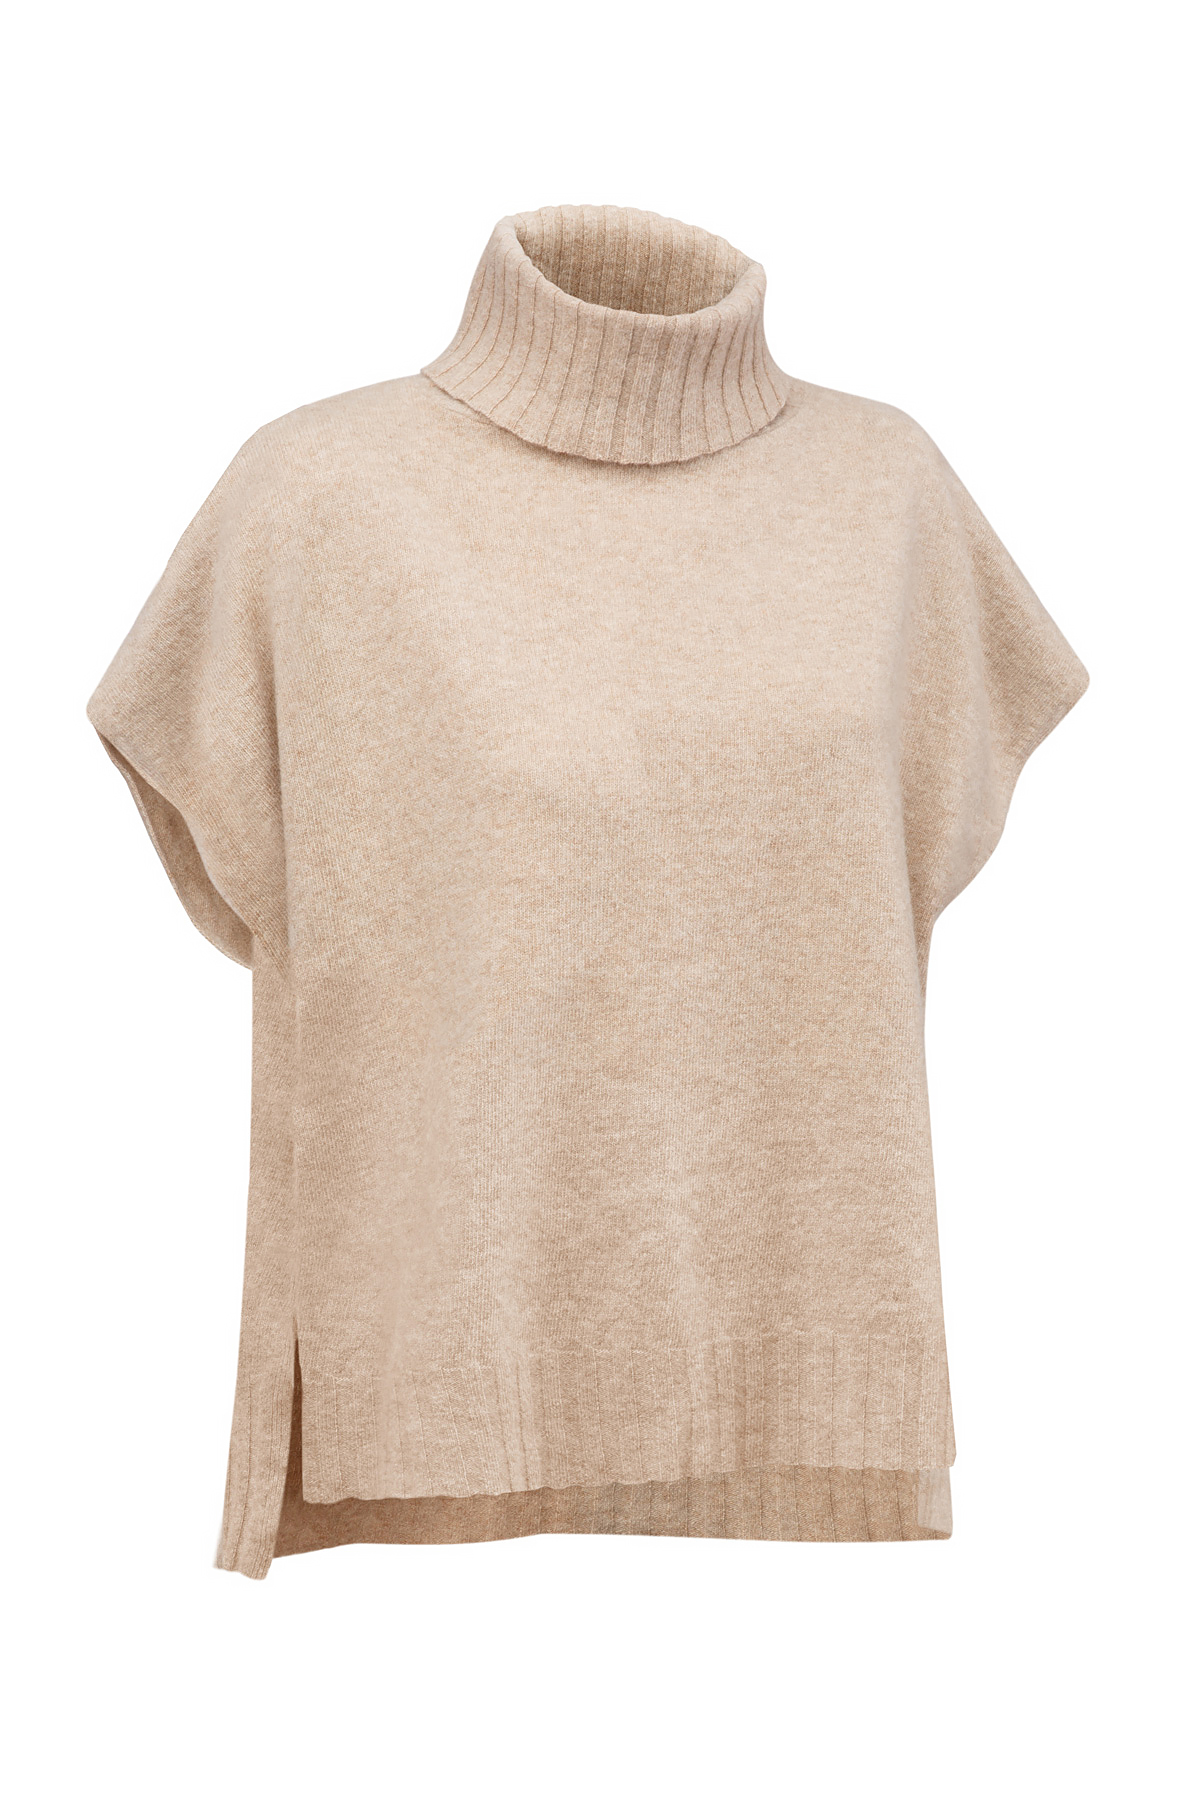 Image of beige knitwear sweater